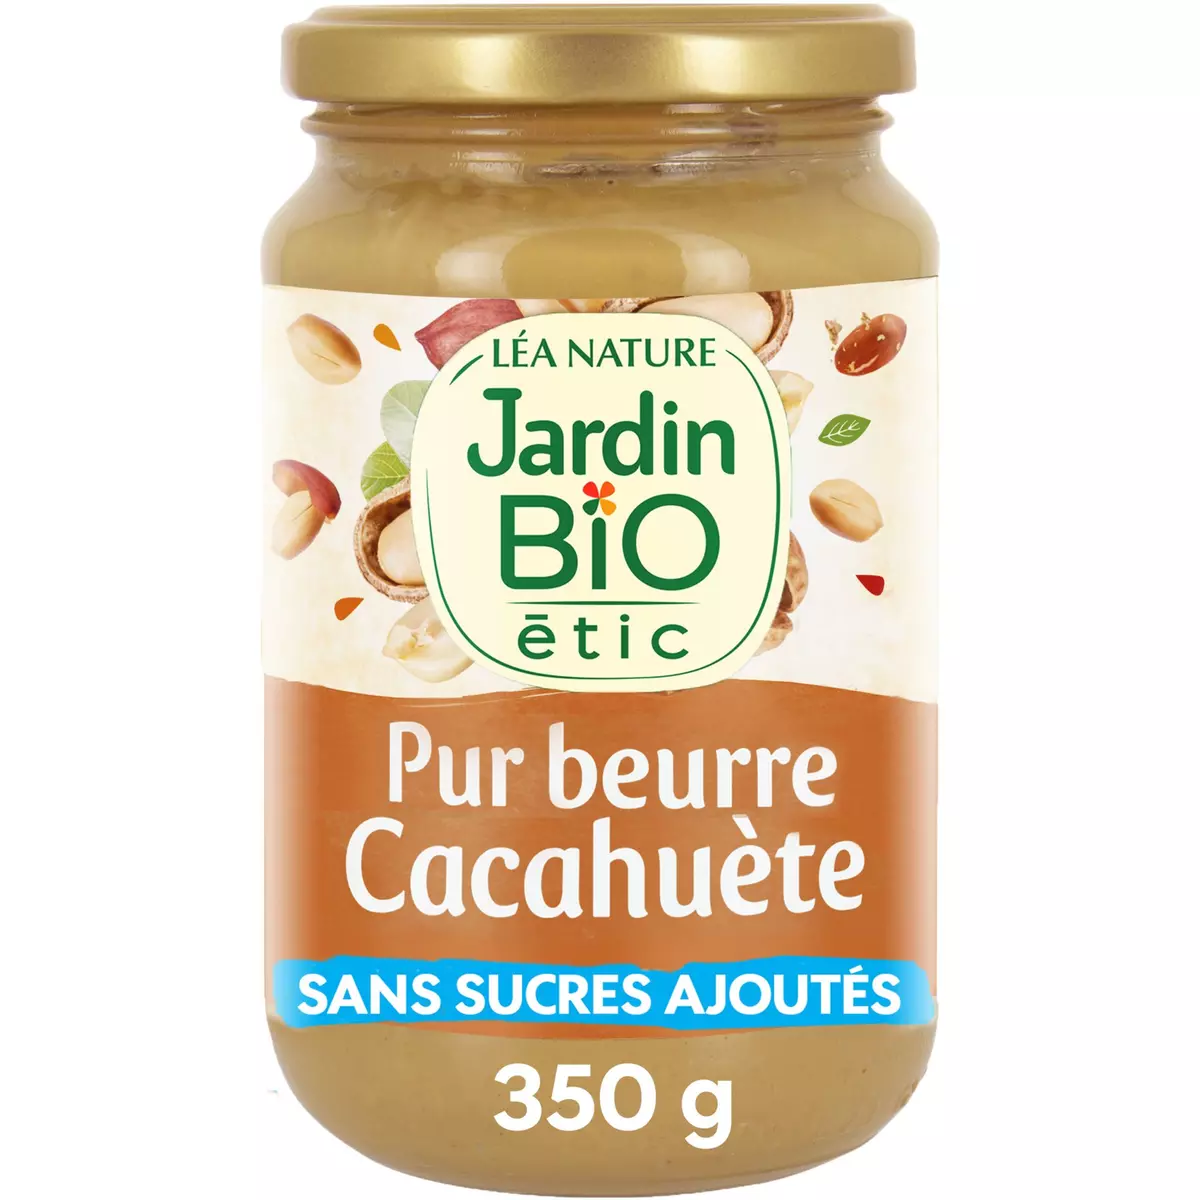 Beurre de cacahuètes sans huile de palme Bio ETHIQUABLE : le bocal de 350 g  à Prix Carrefour